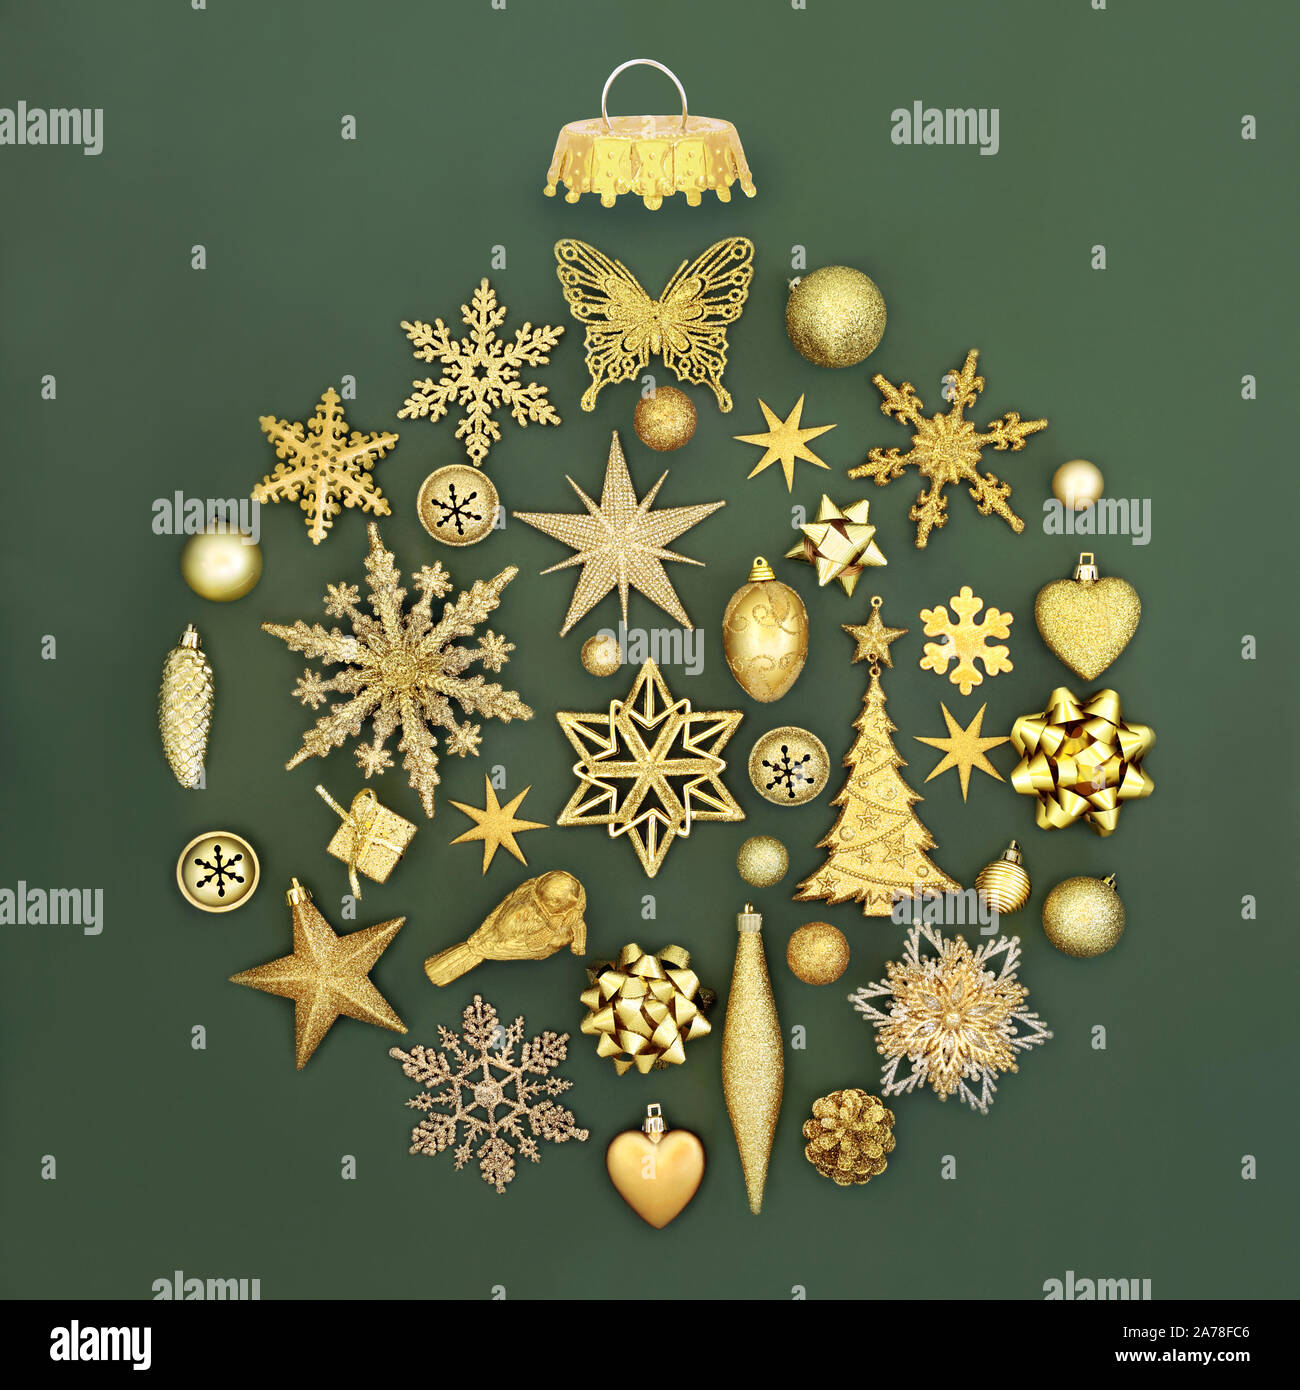 Décorations de Noël en or dans un ornement babiole abstraite sur fond vert. Symboles traditionnels pour les fêtes. Banque D'Images